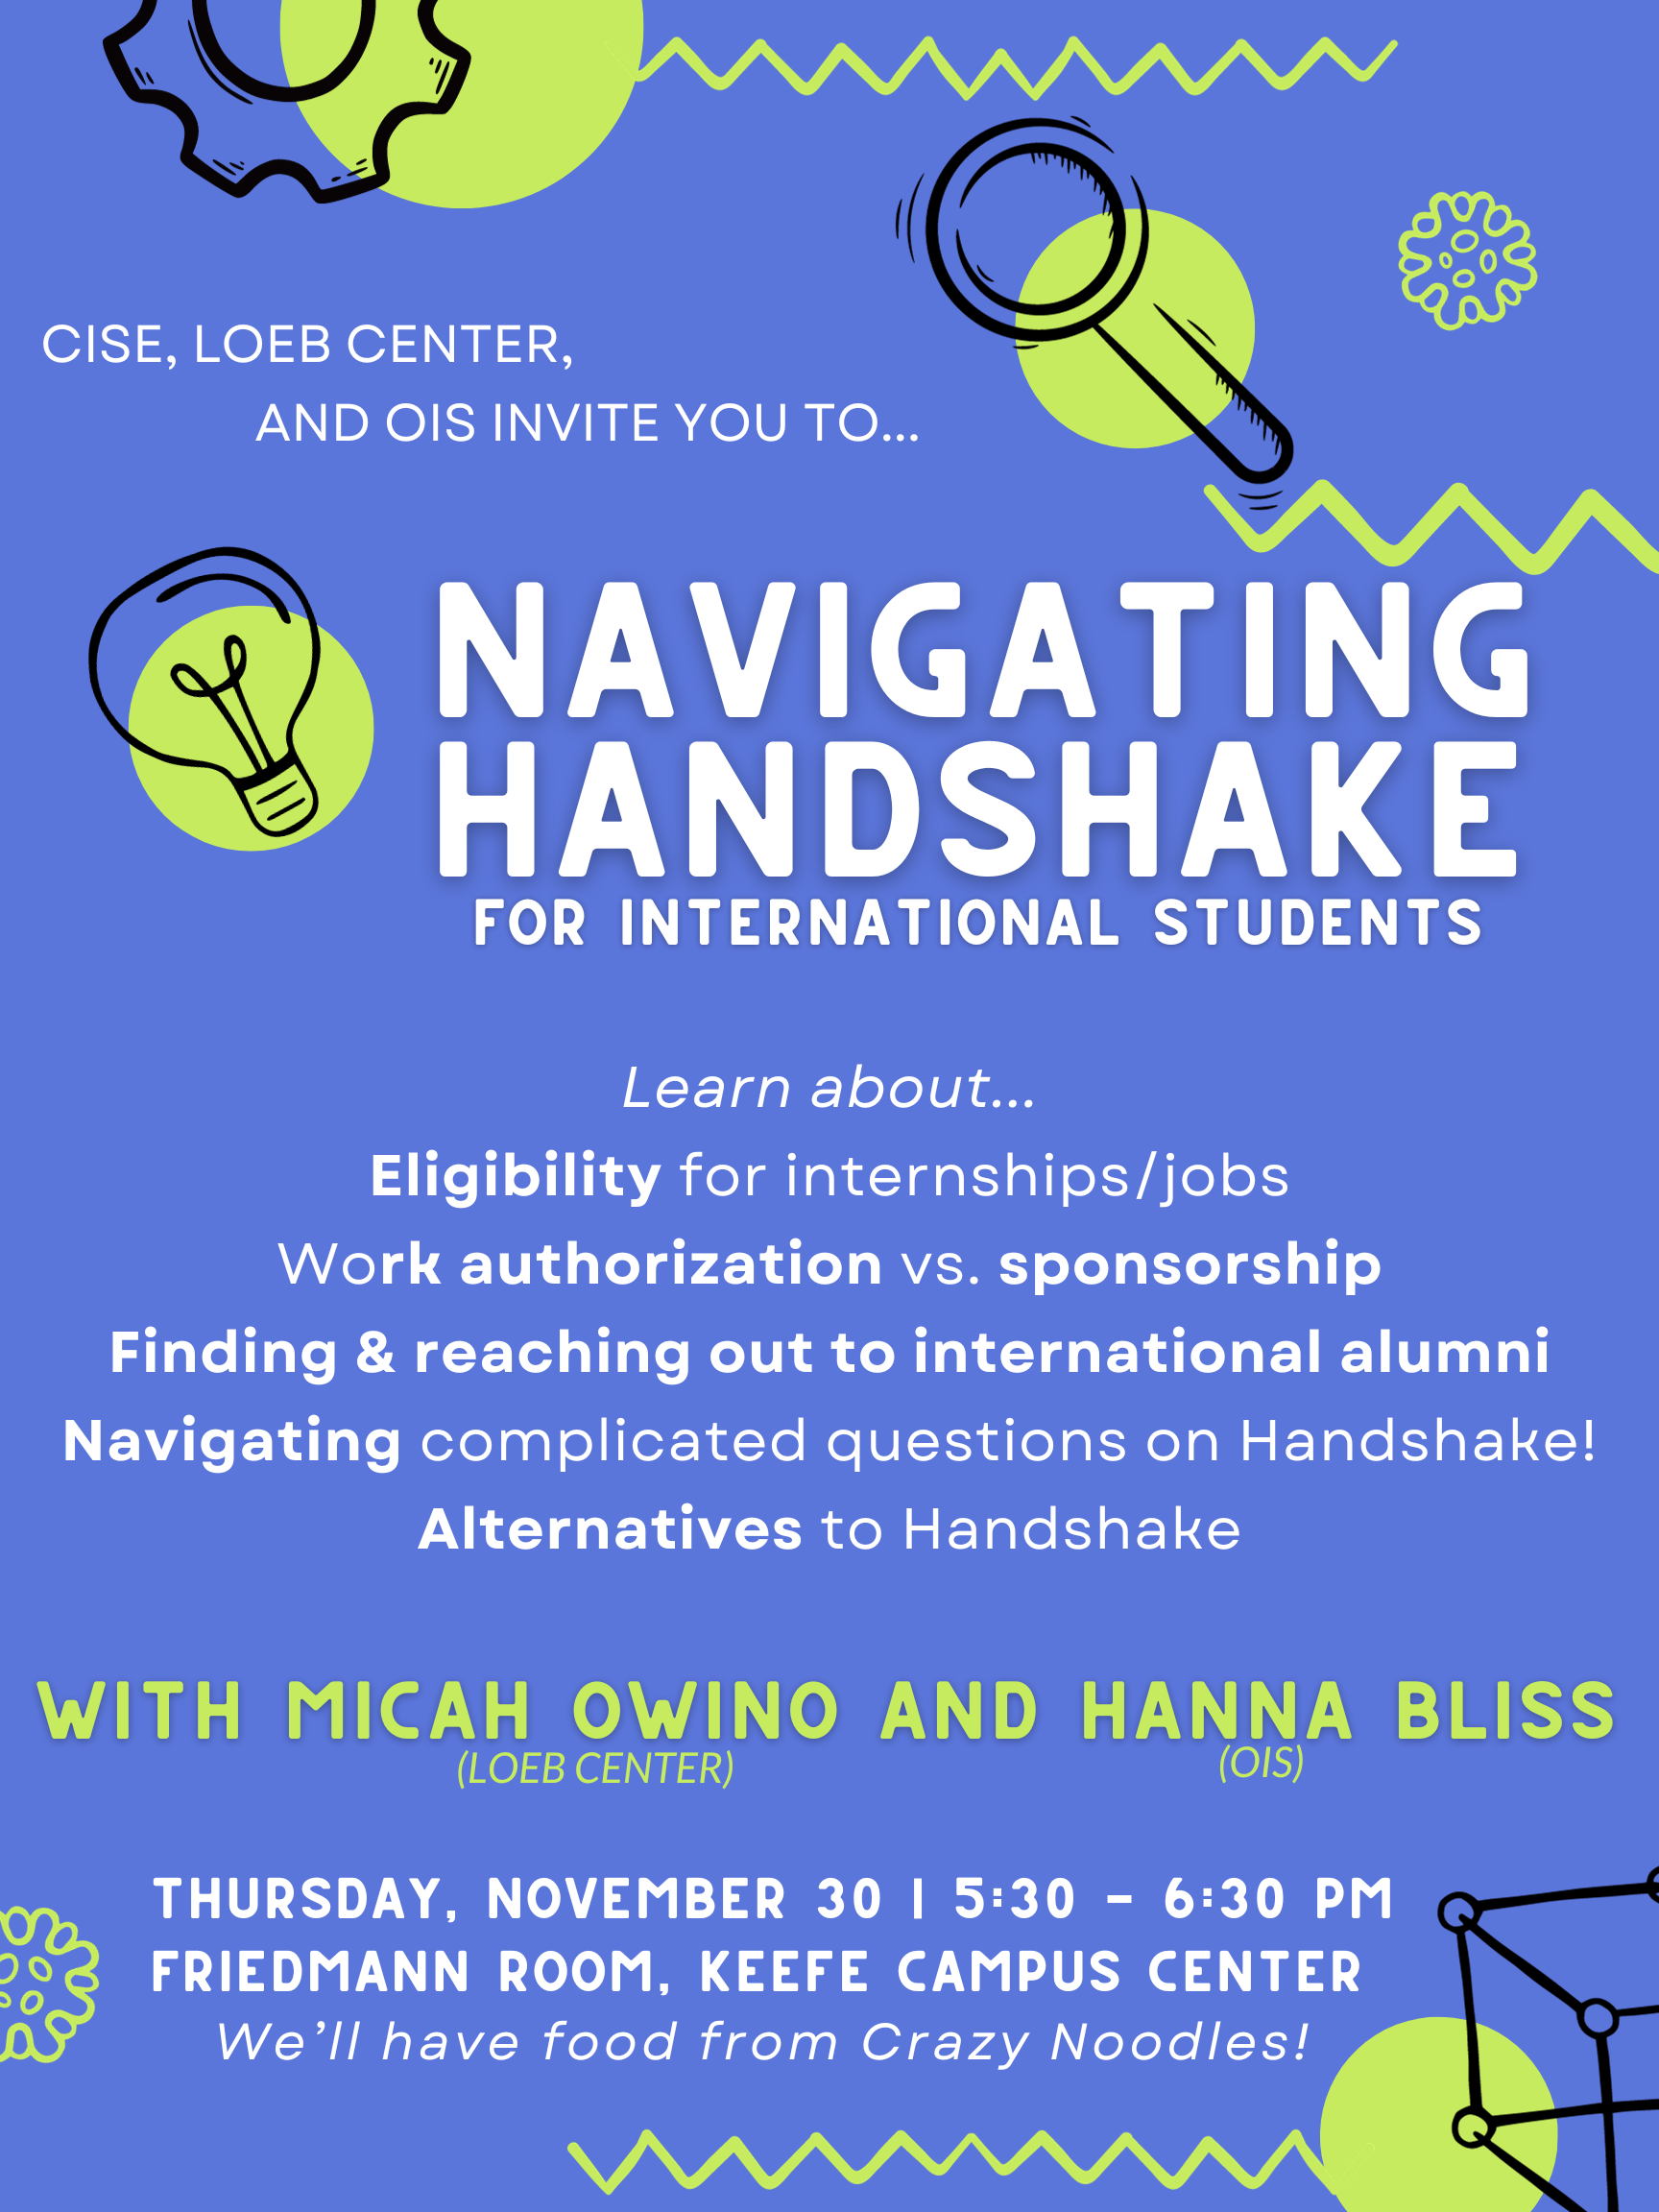 Student Work Authorization Information – Handshake Help Center